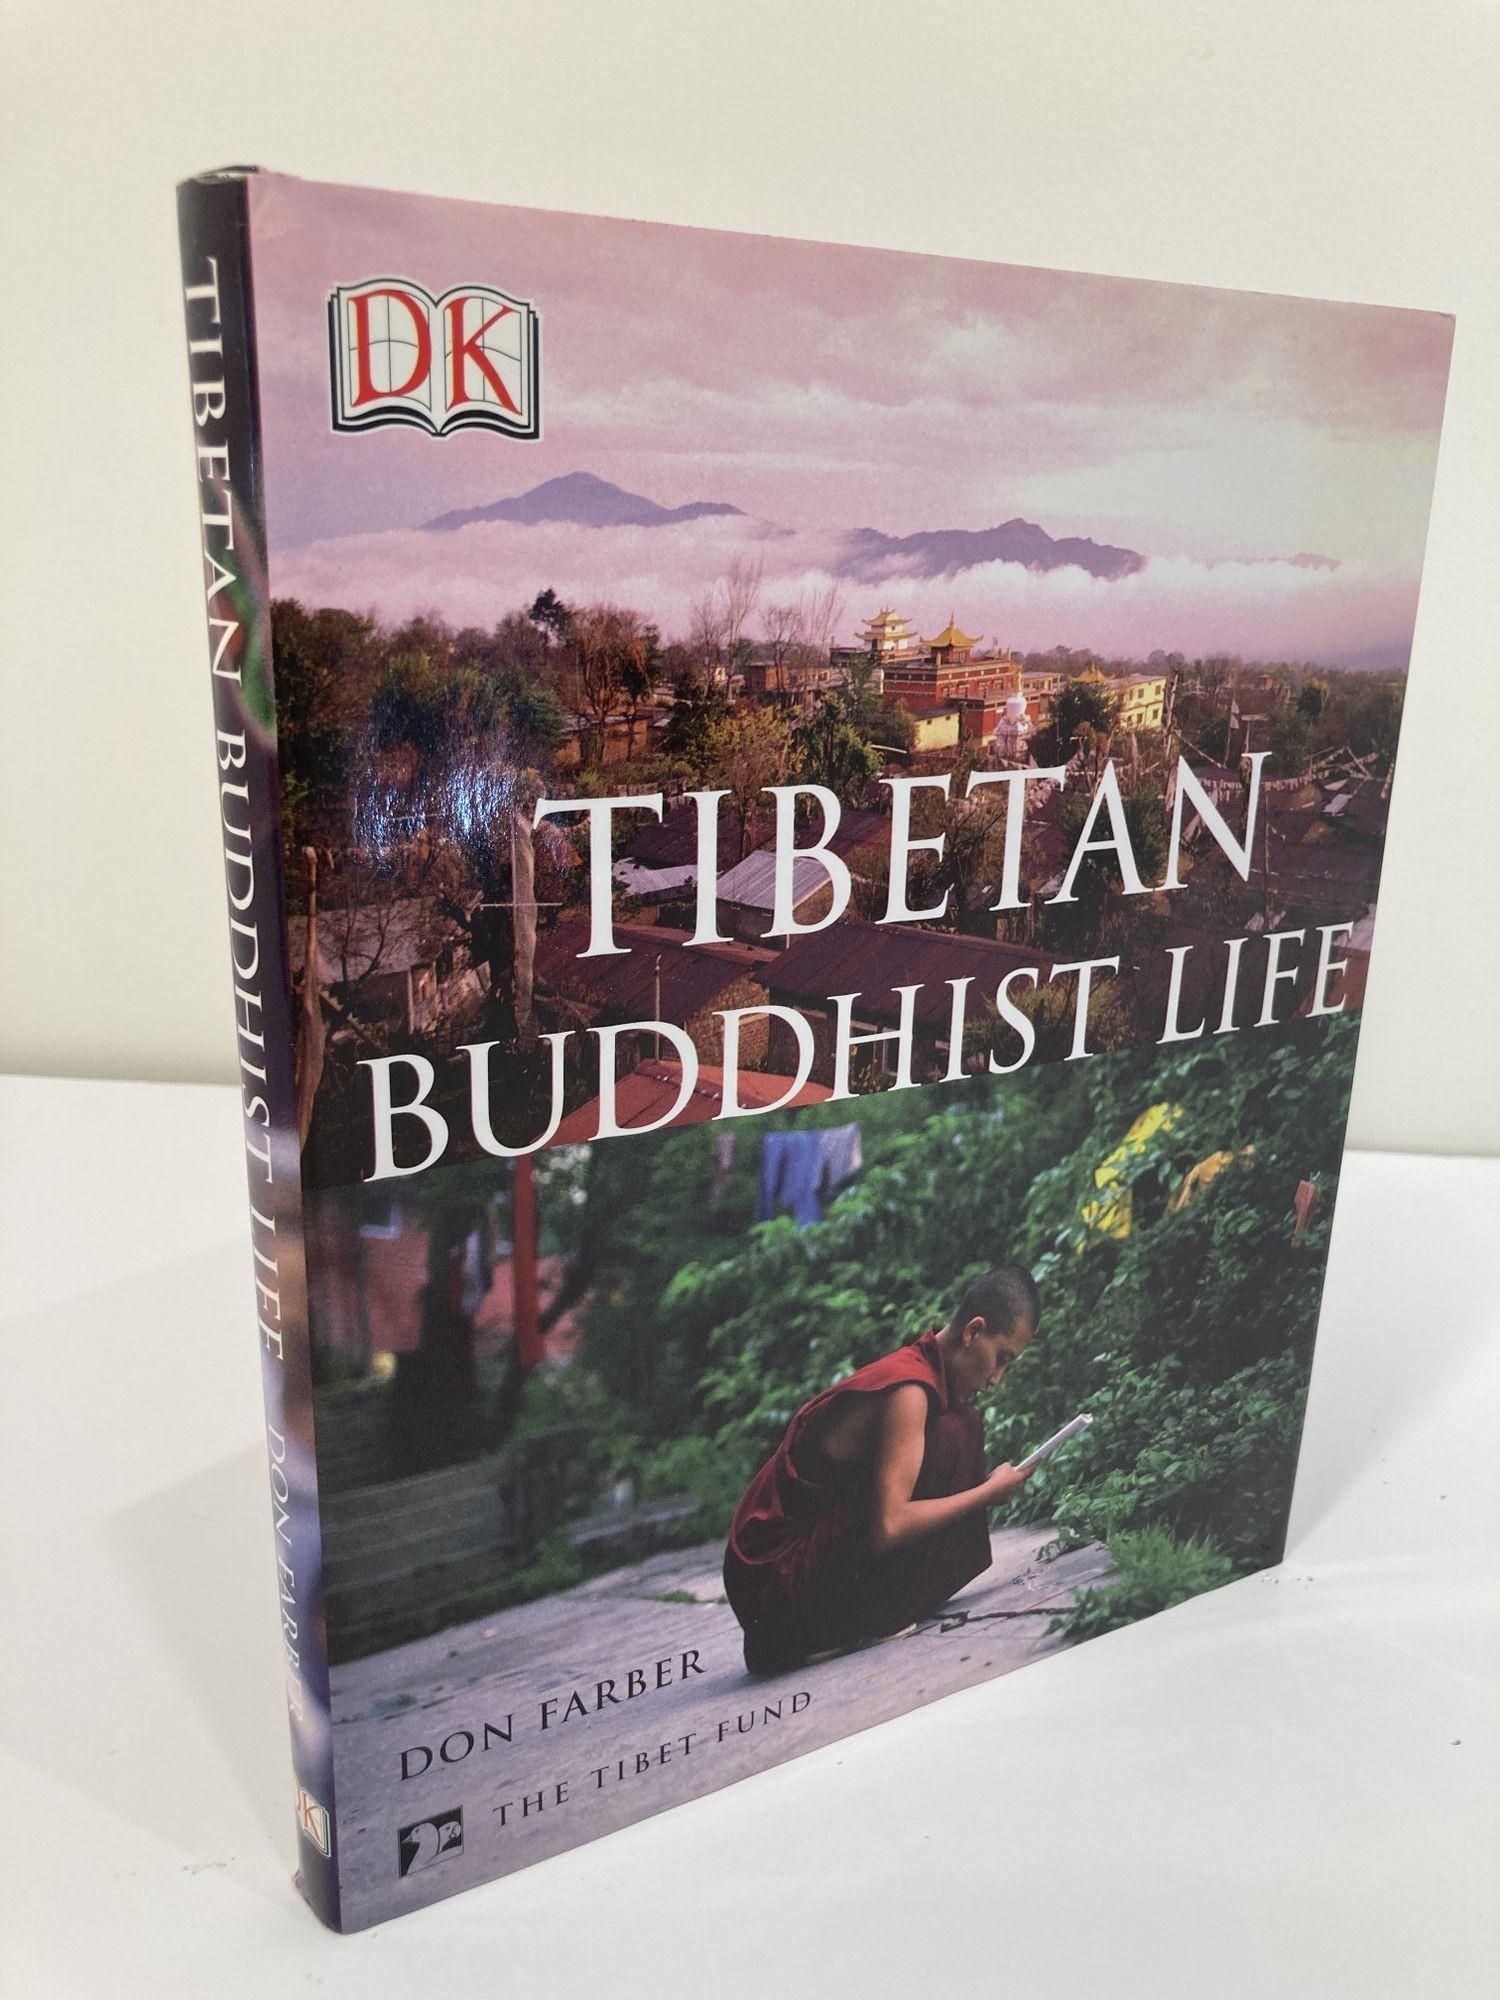 Tibetan Buddhist Life par Don Farber Livre relié.
Don Farber, Dorling Kindersley, 2003 - bouddhisme - 192 pages.
Cette vue d'ensemble du bouddhisme tibétain, richement illustrée, retrace les origines et l'histoire du bouddhisme au Tibet, son